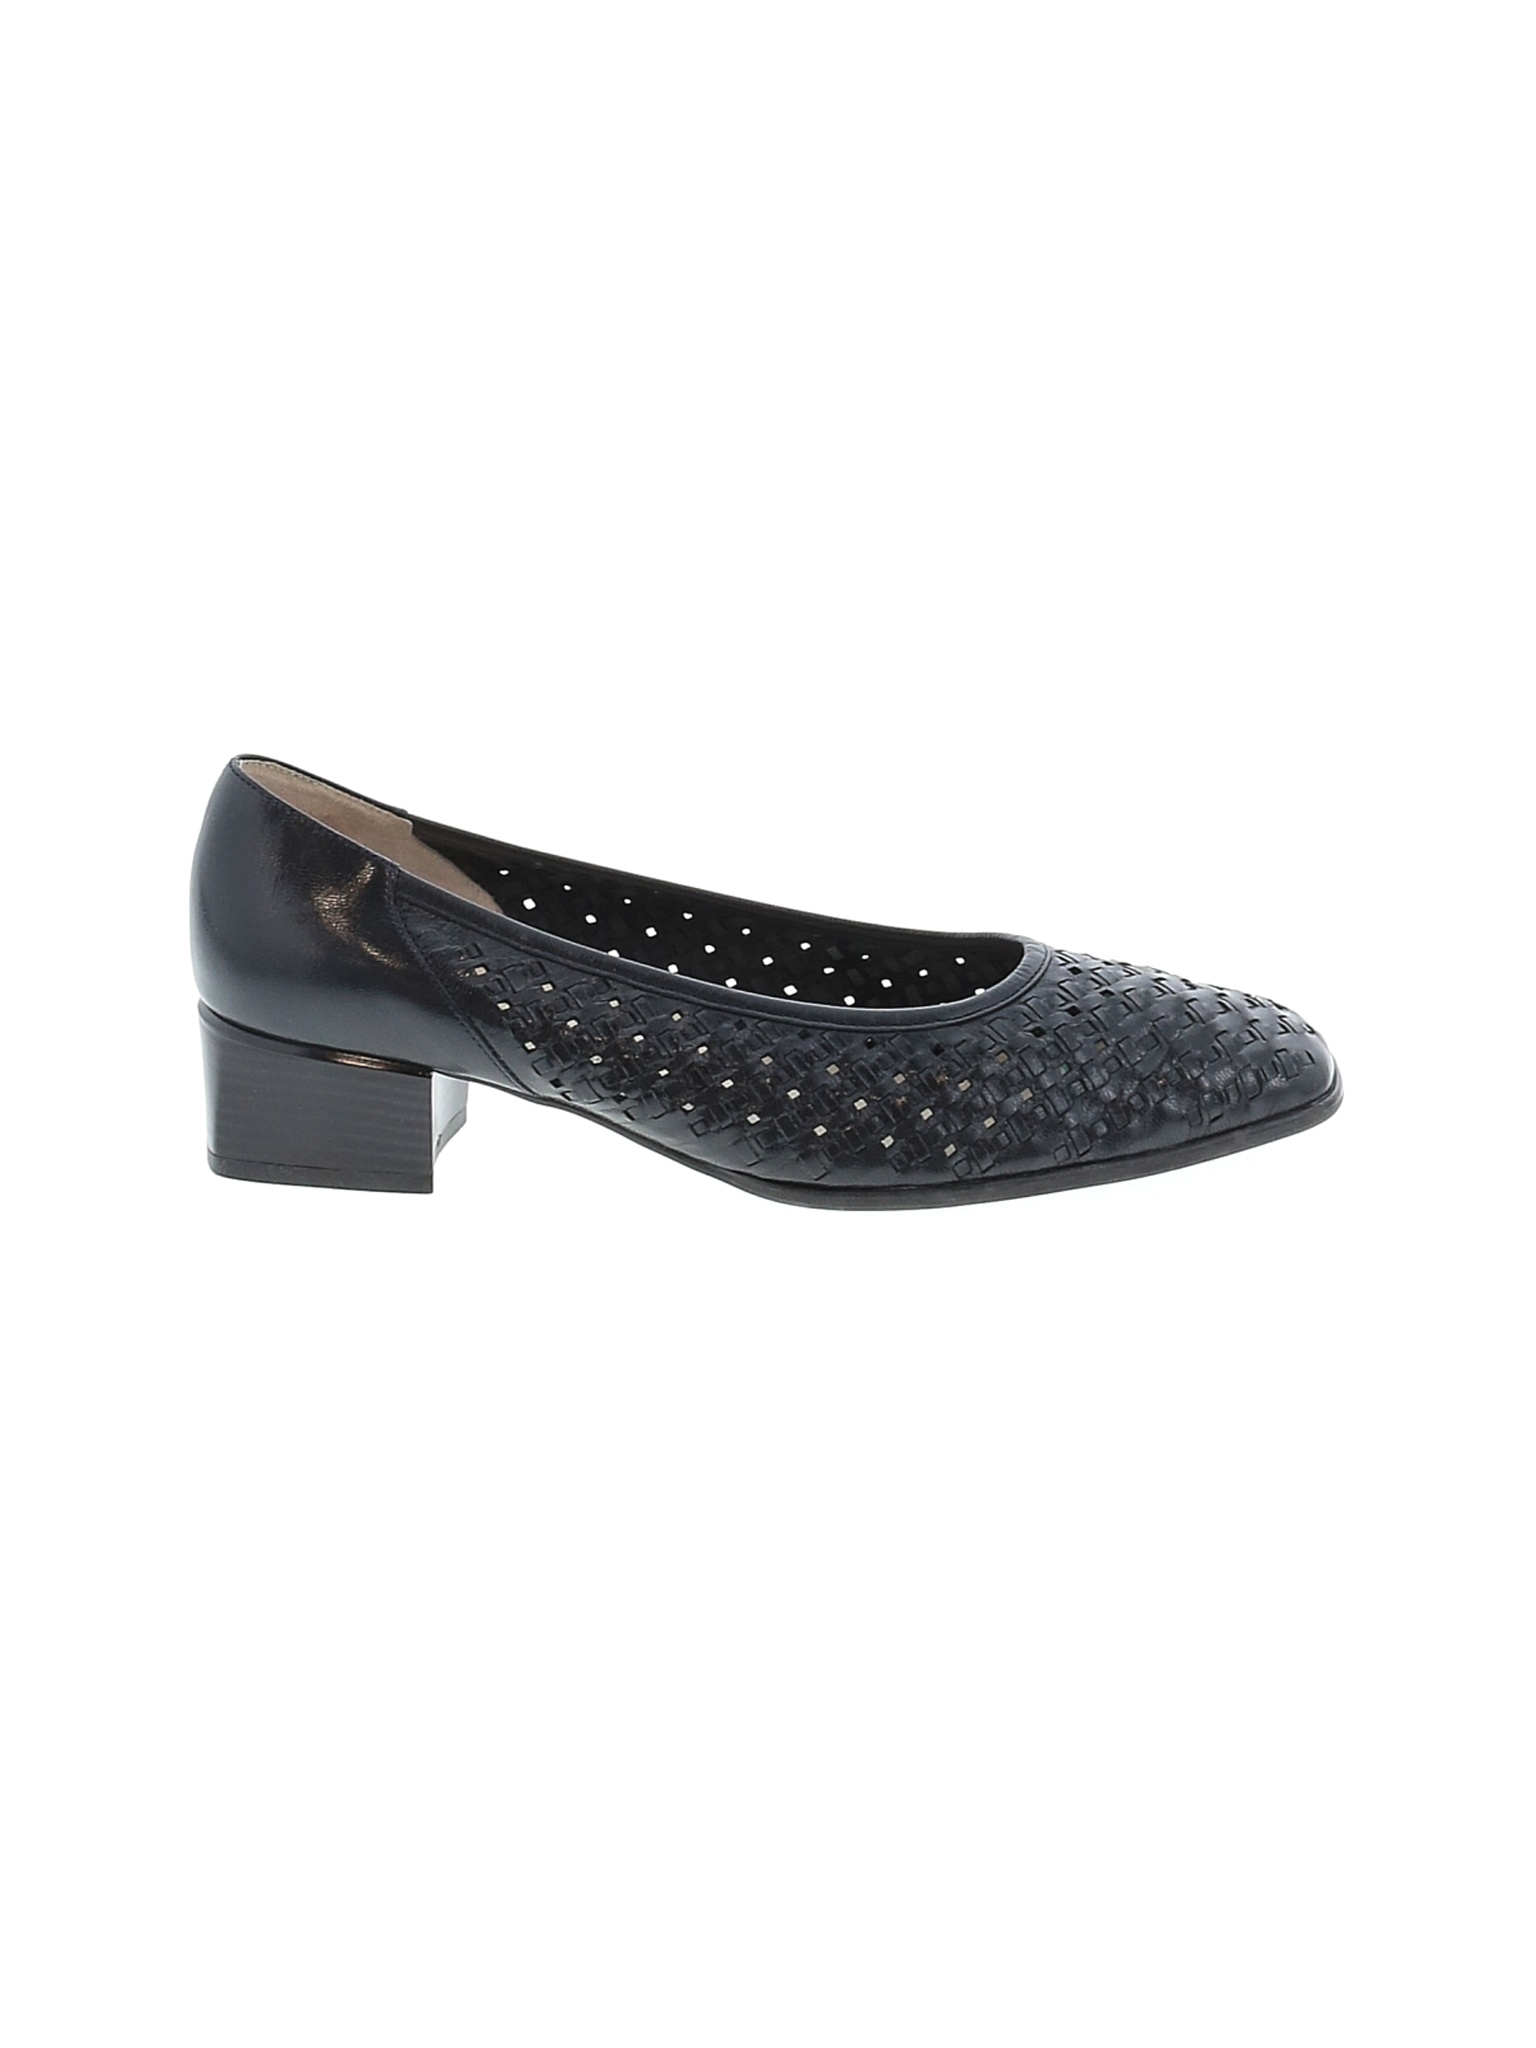 Jenny Women Black Heels US 8 | eBay